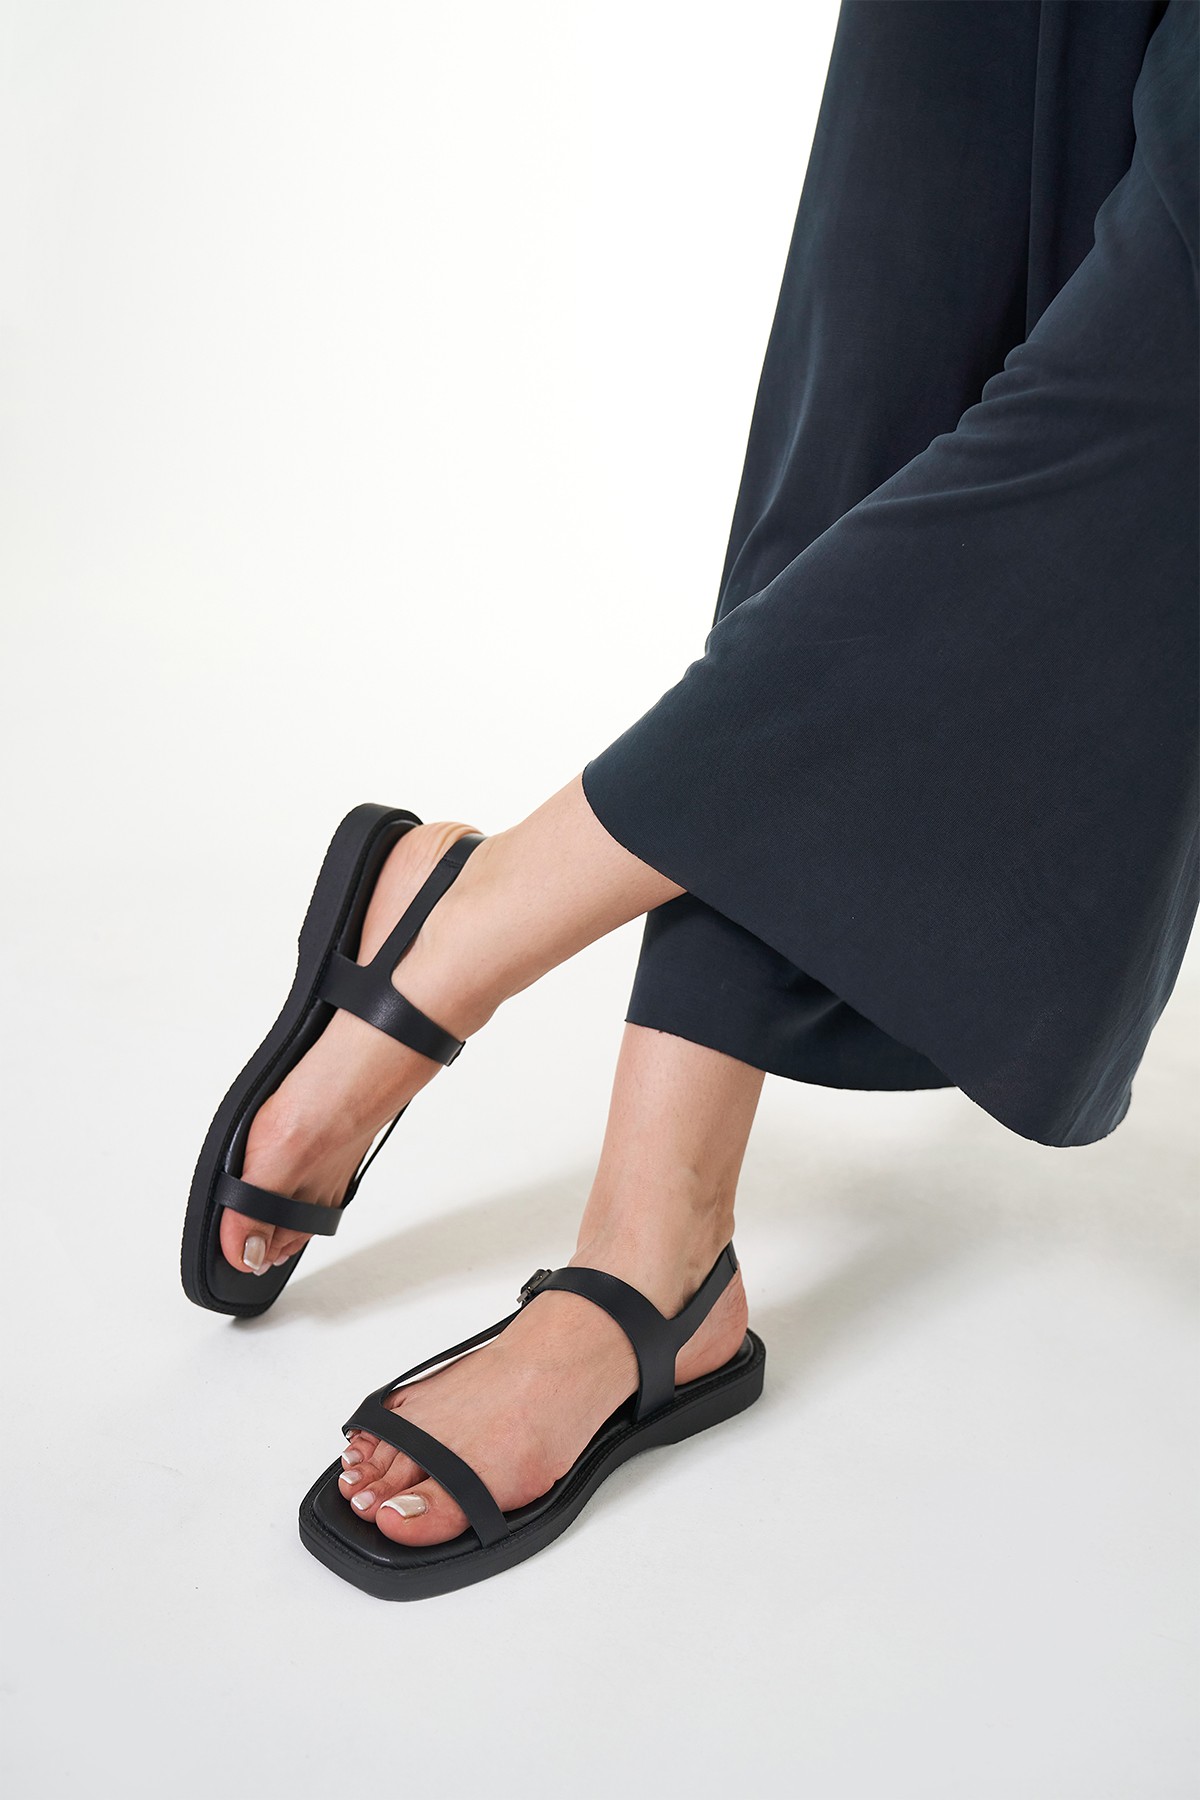 Wissal Hakiki Deri Kadın Sandalet - Siyah